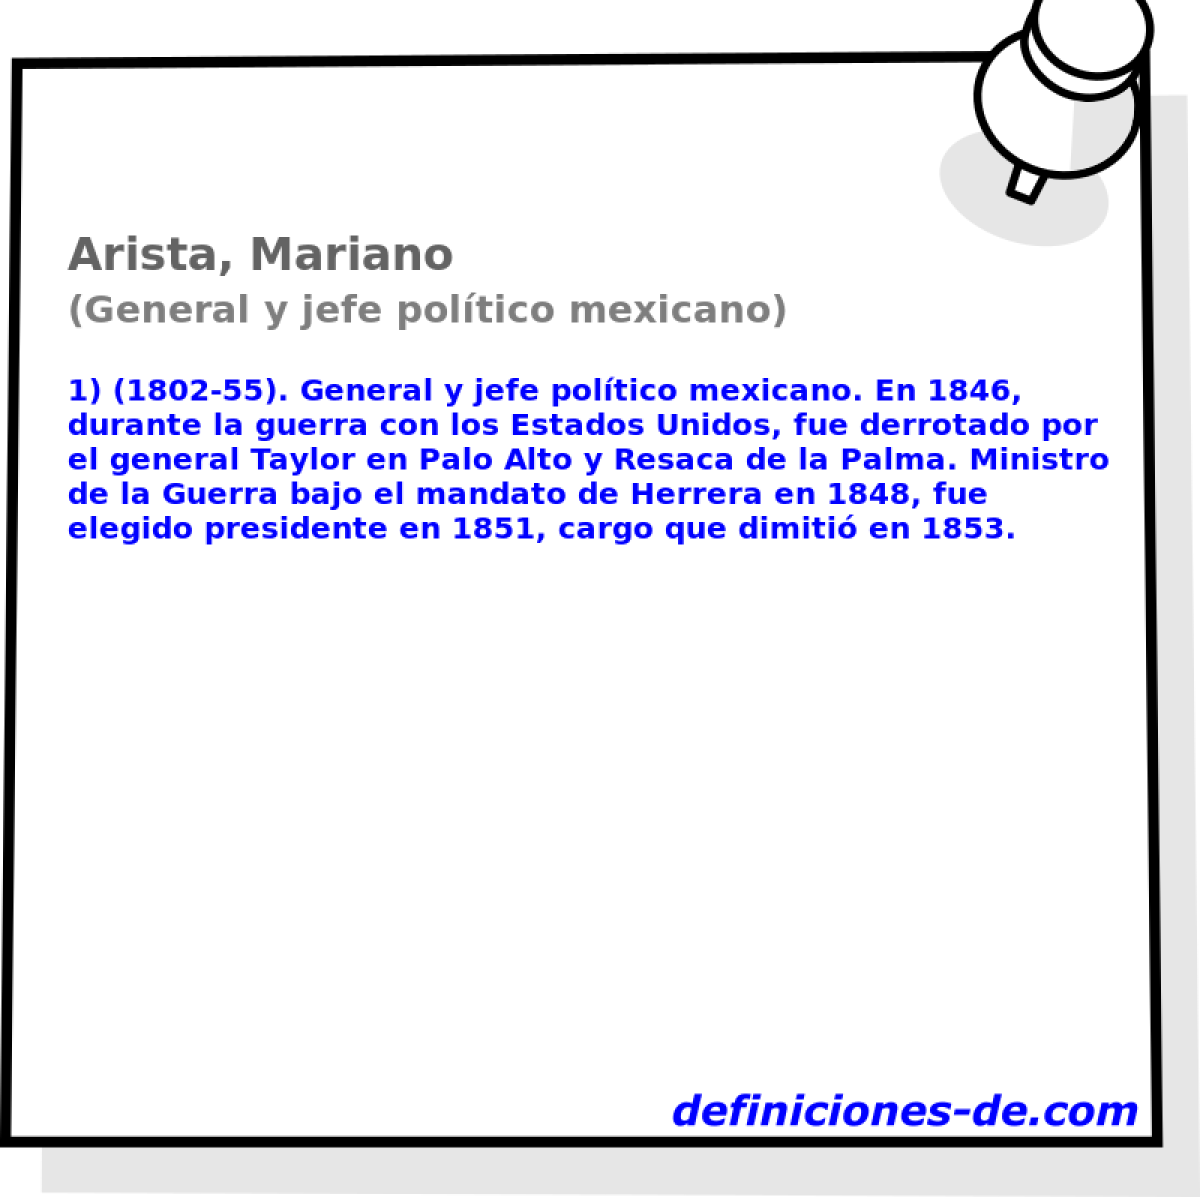 Arista, Mariano (General y jefe poltico mexicano)